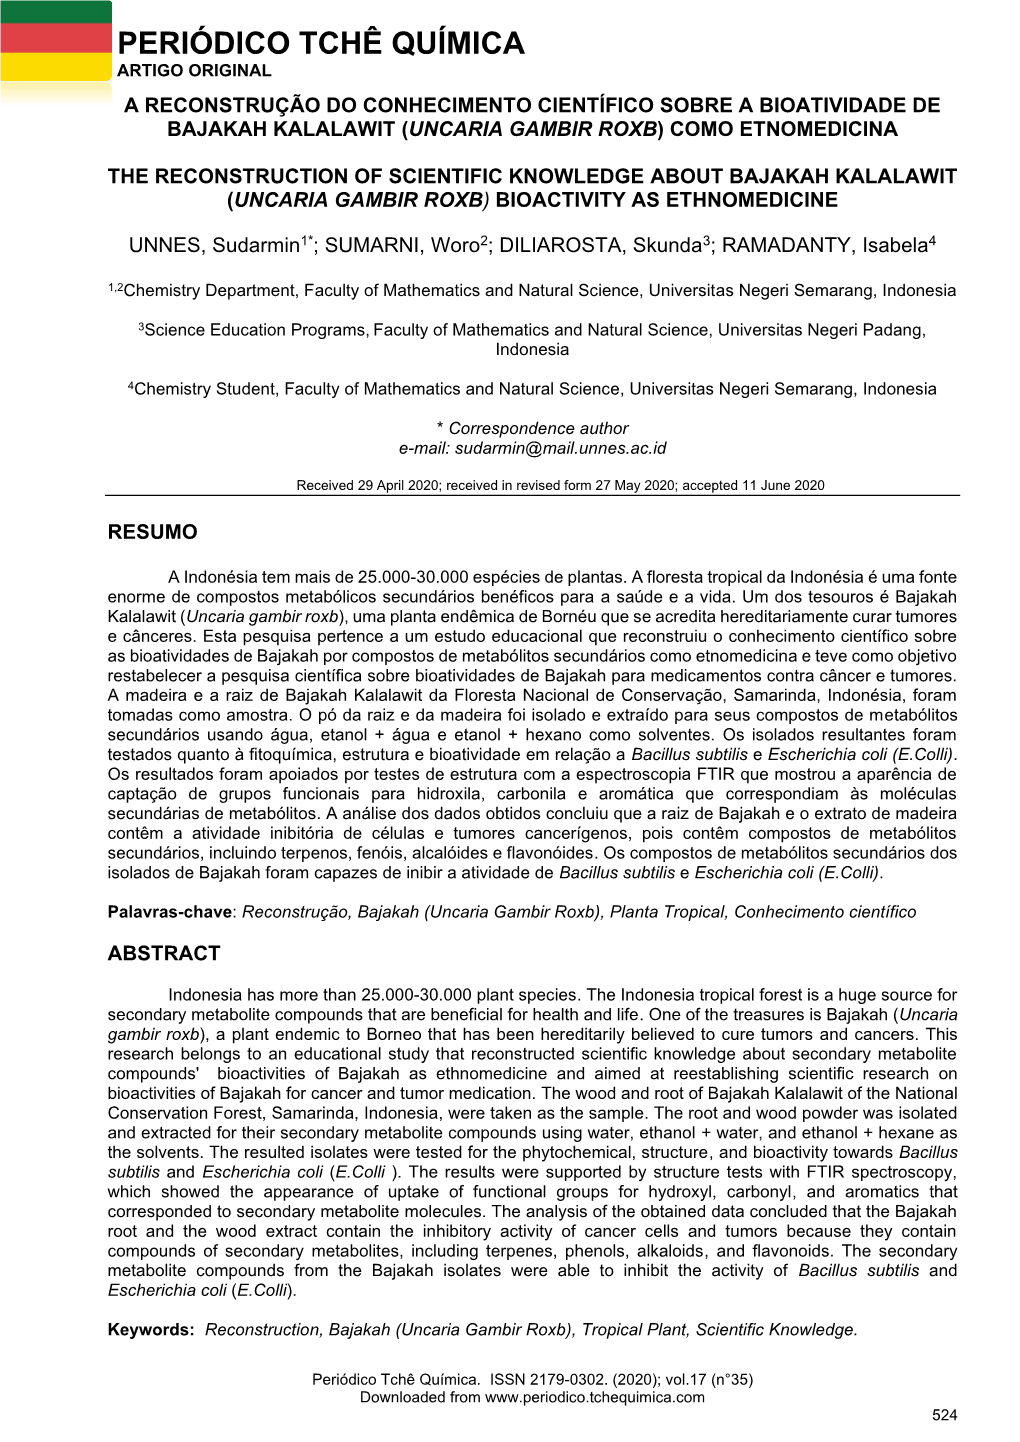 Periódico Tchê Química Artigo Original a Reconstrução Do Conhecimento Científico Sobre a Bioatividade De Bajakah Kalalawit (Uncaria Gambir Roxb) Como Etnomedicina